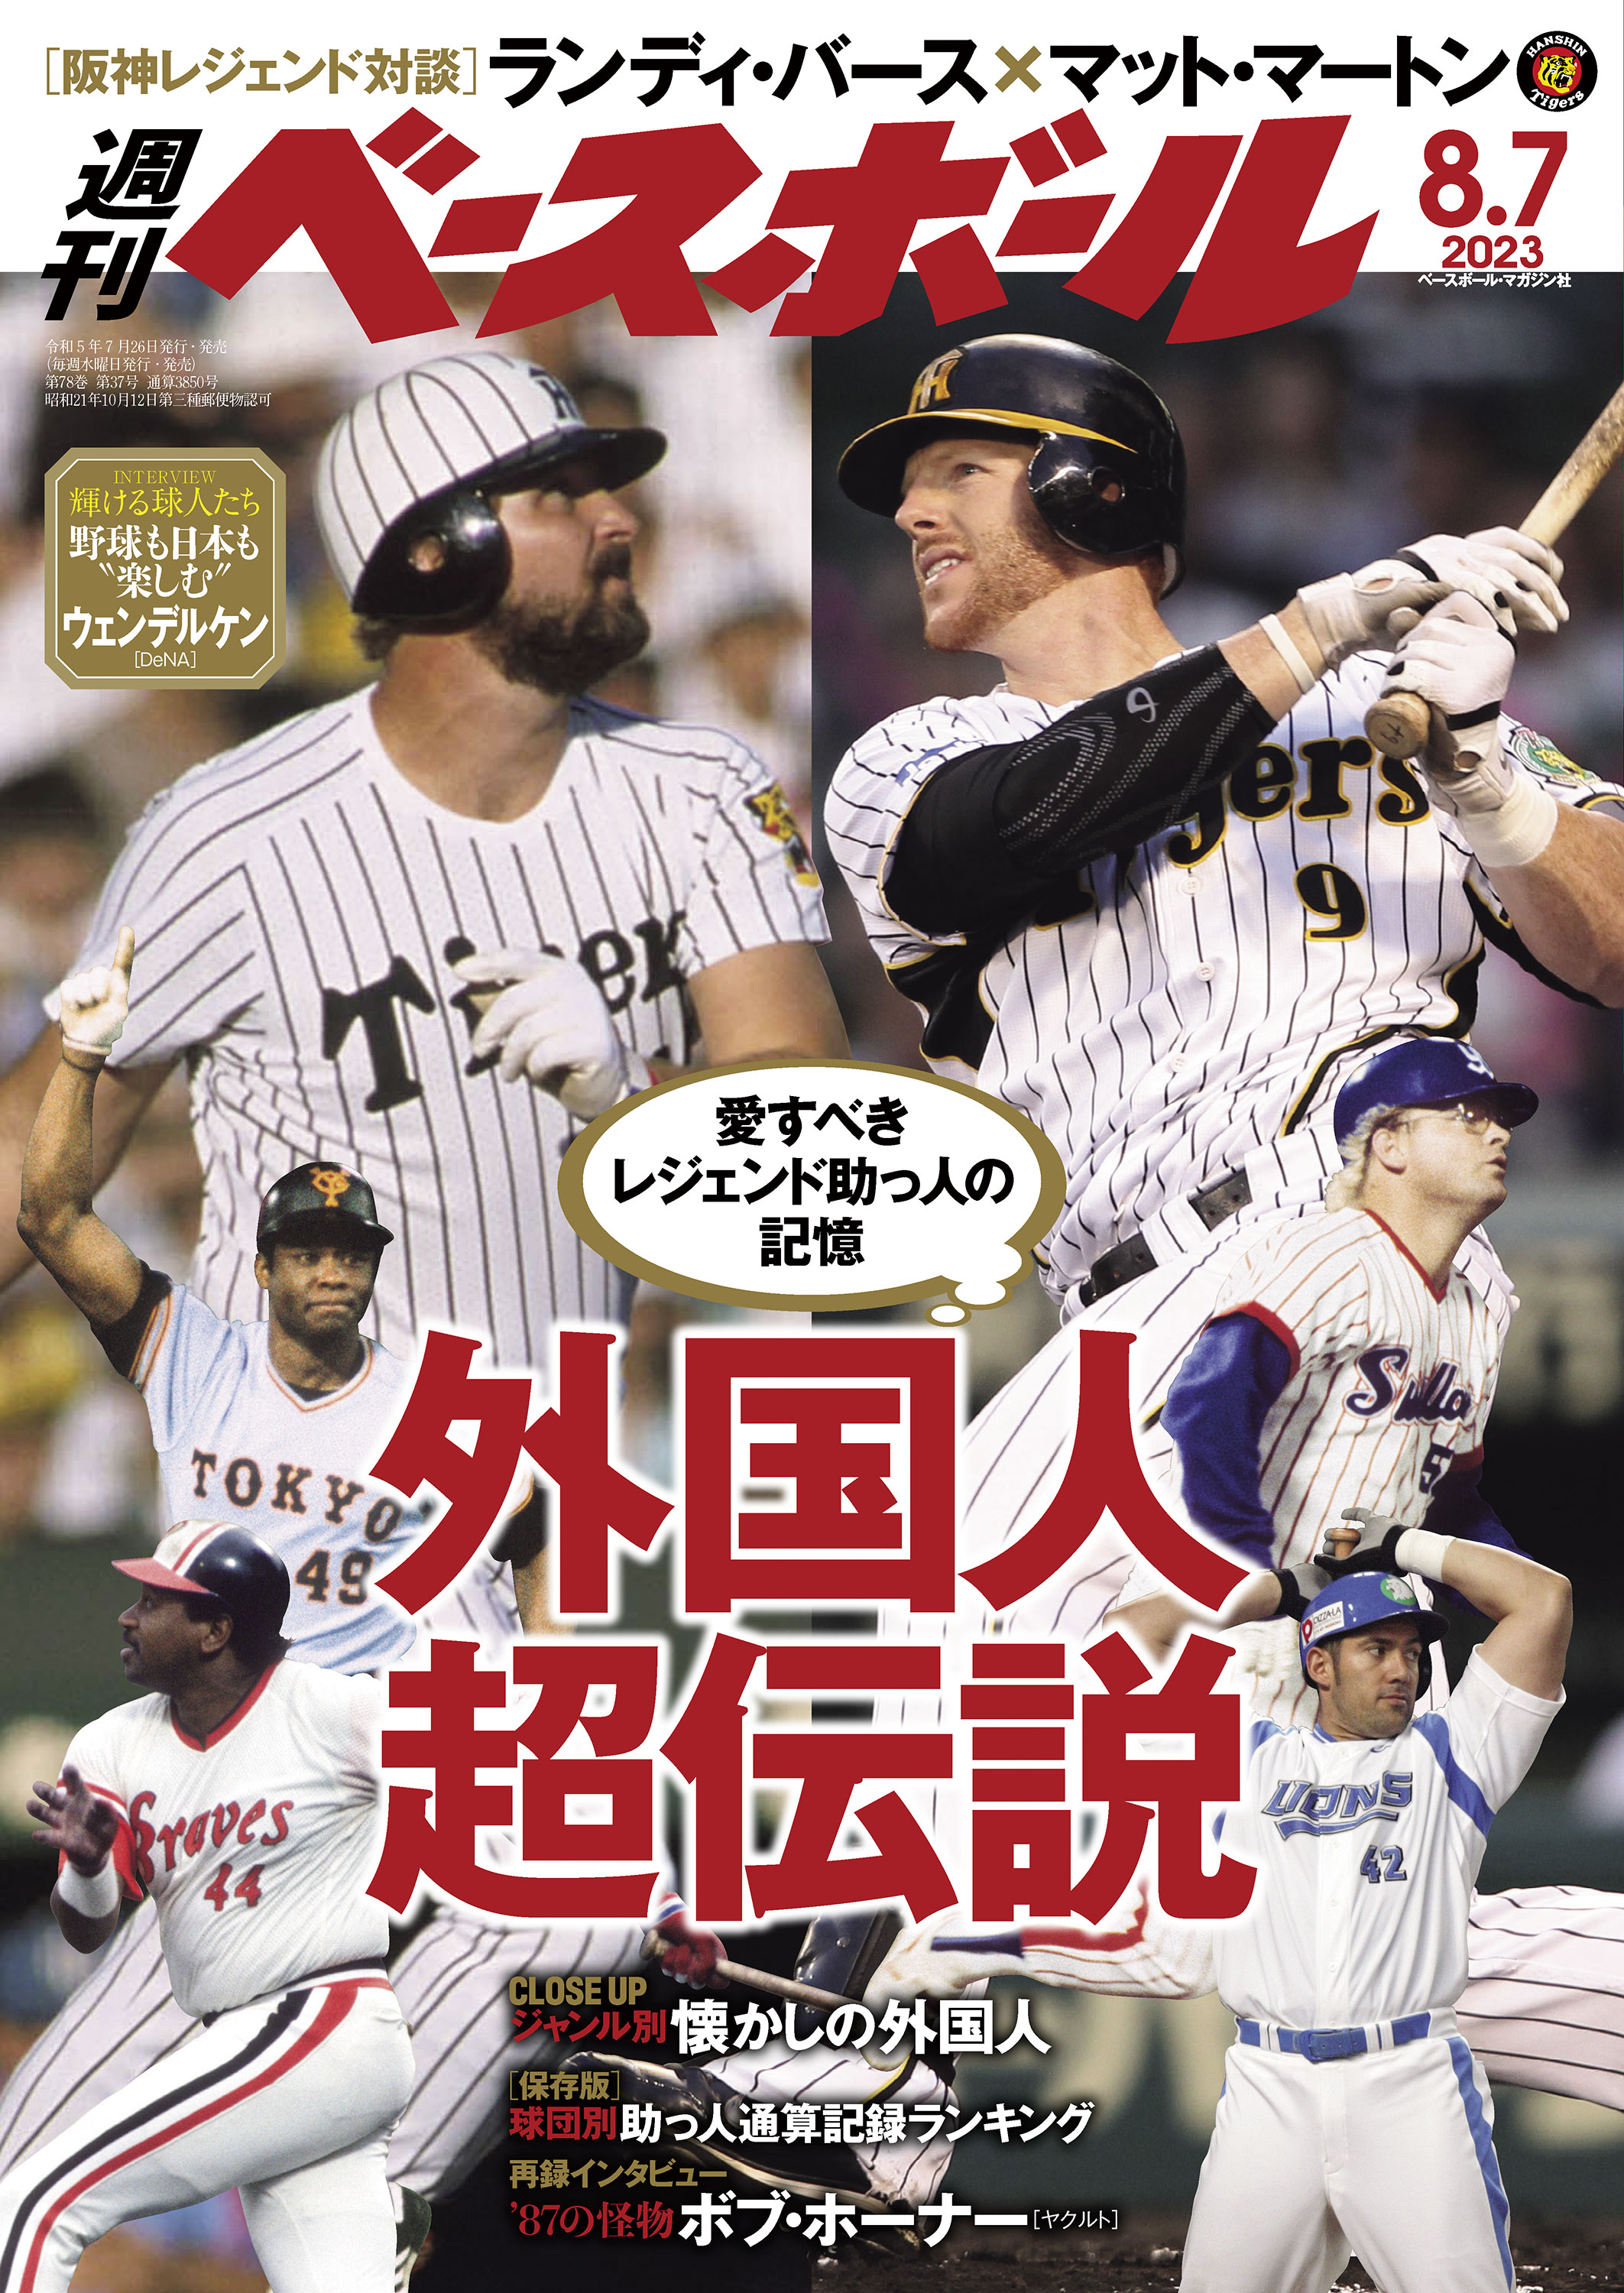 週刊ベースボール 1979 日米野球ガイド MLB 王貞治 江夏豊 大リーグ 